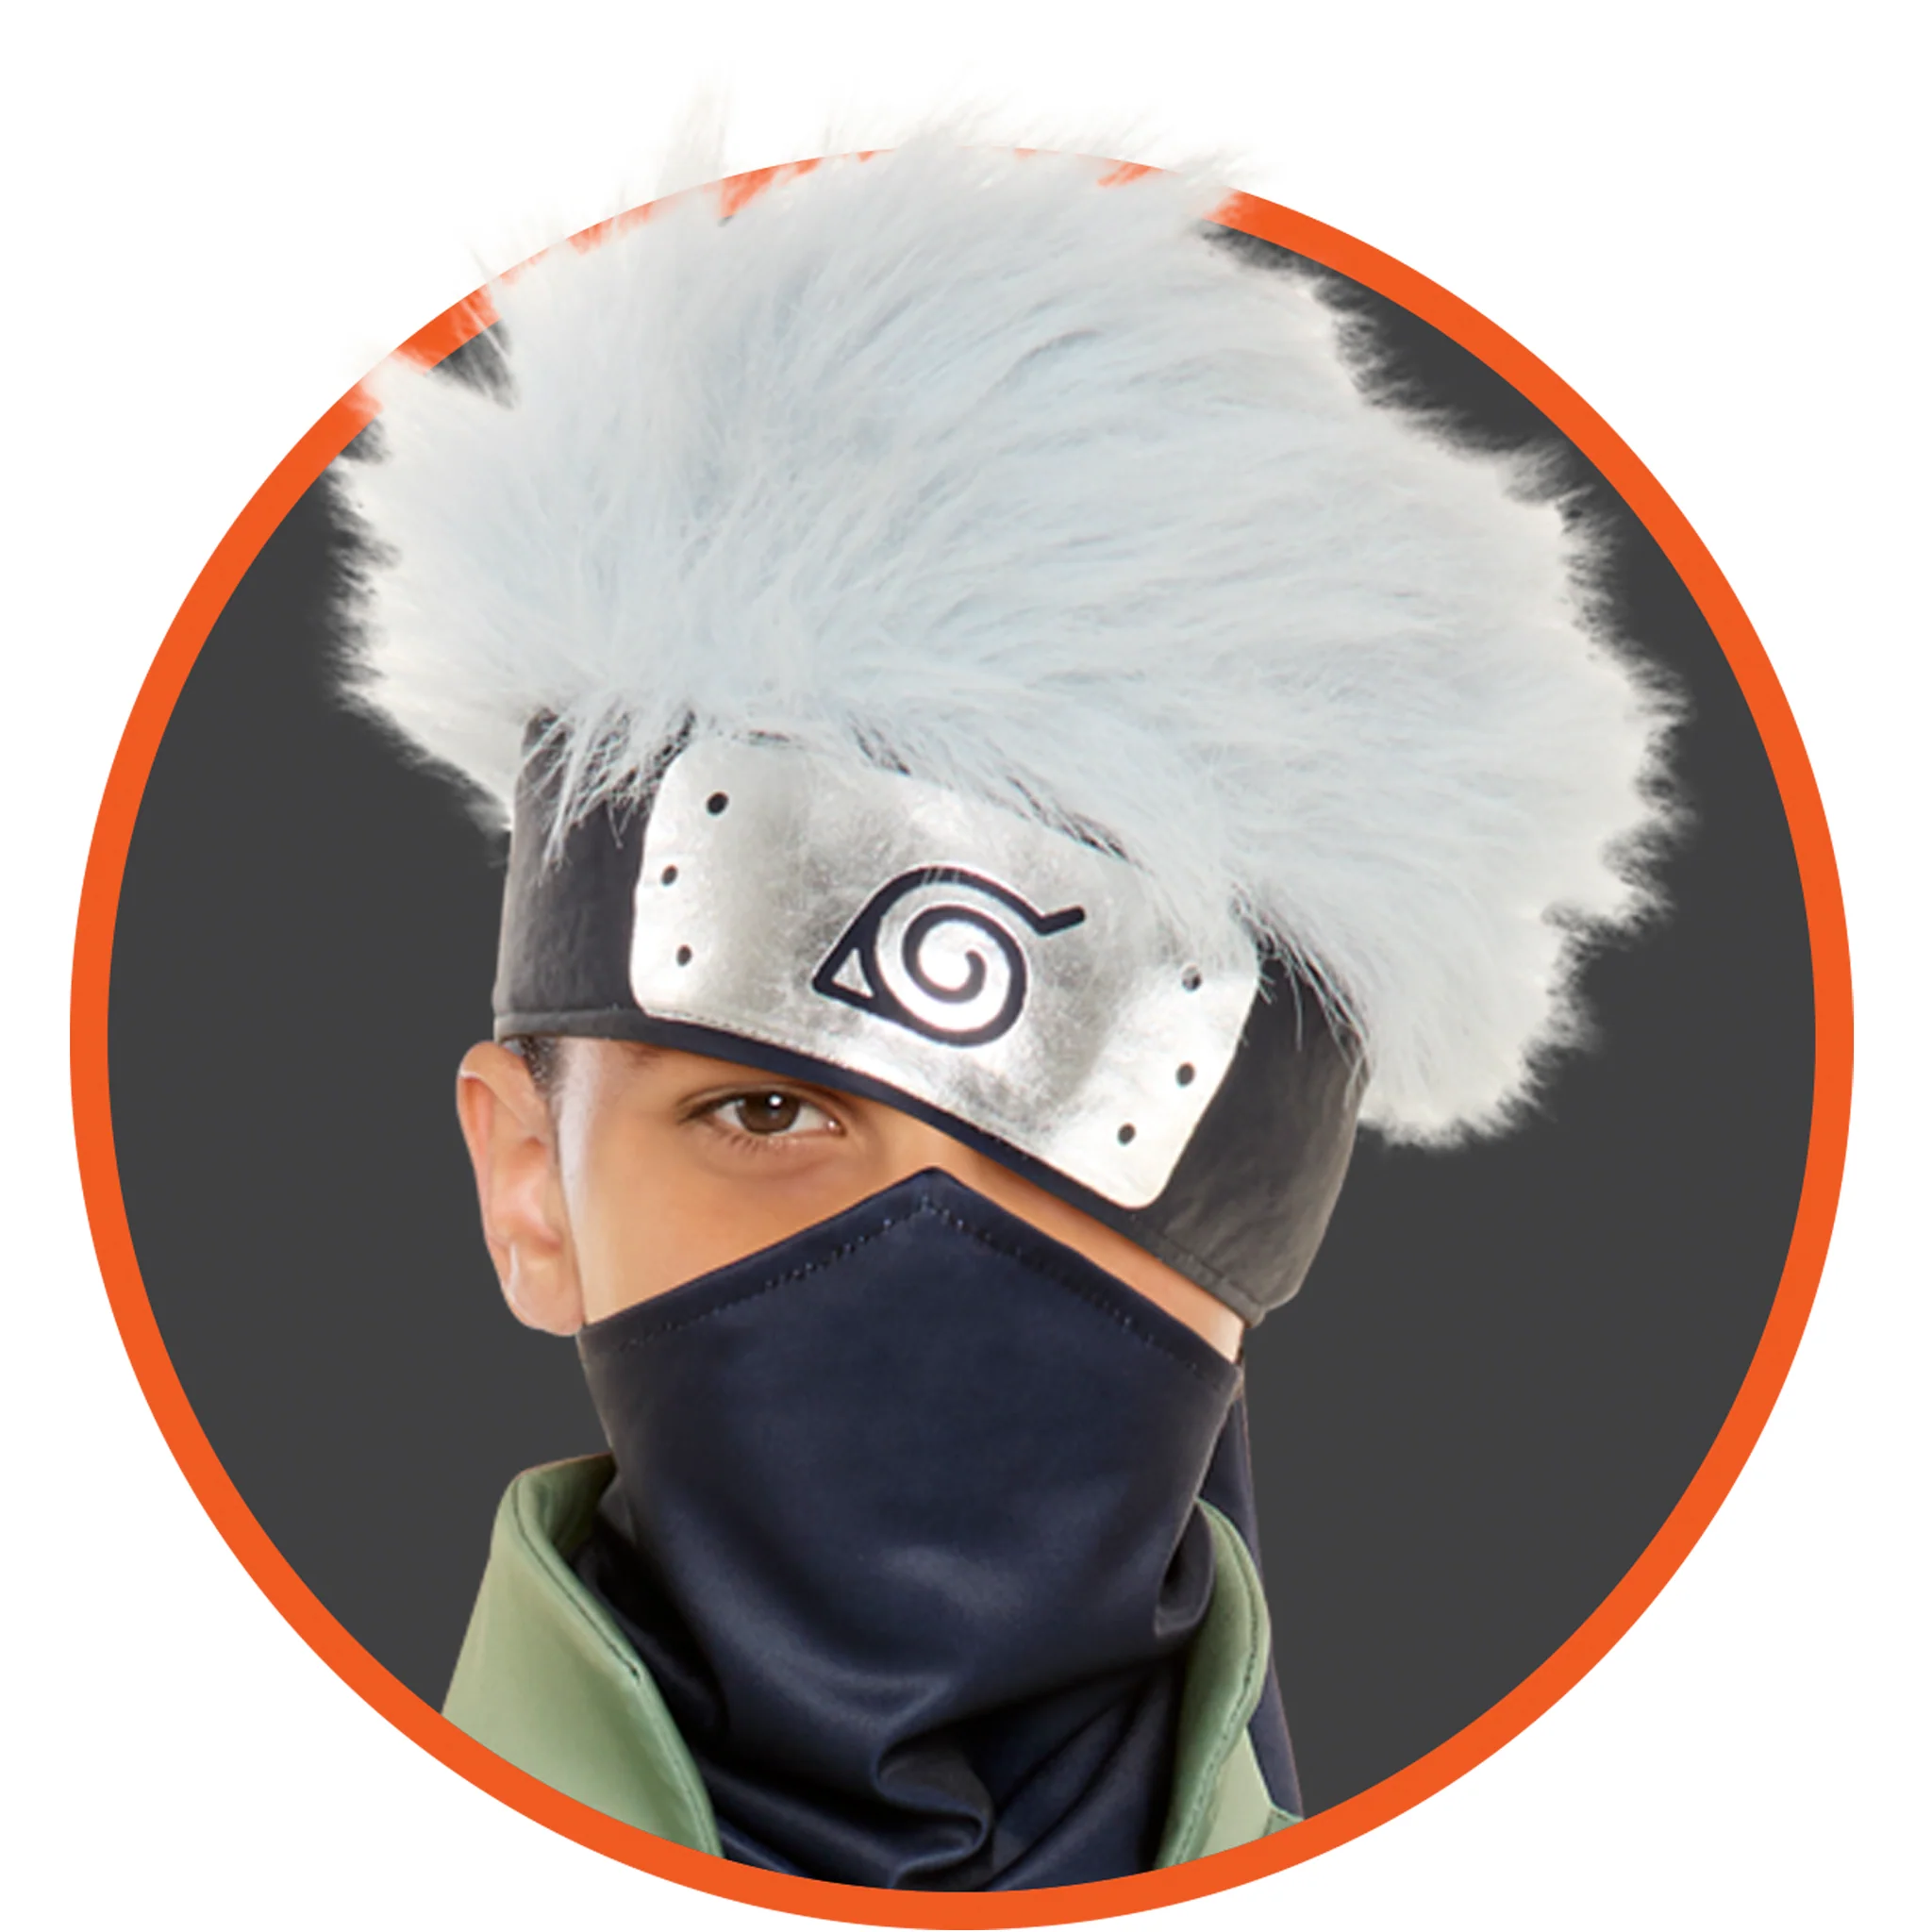 Naruto Kakashi Hatake Cosplay Wig